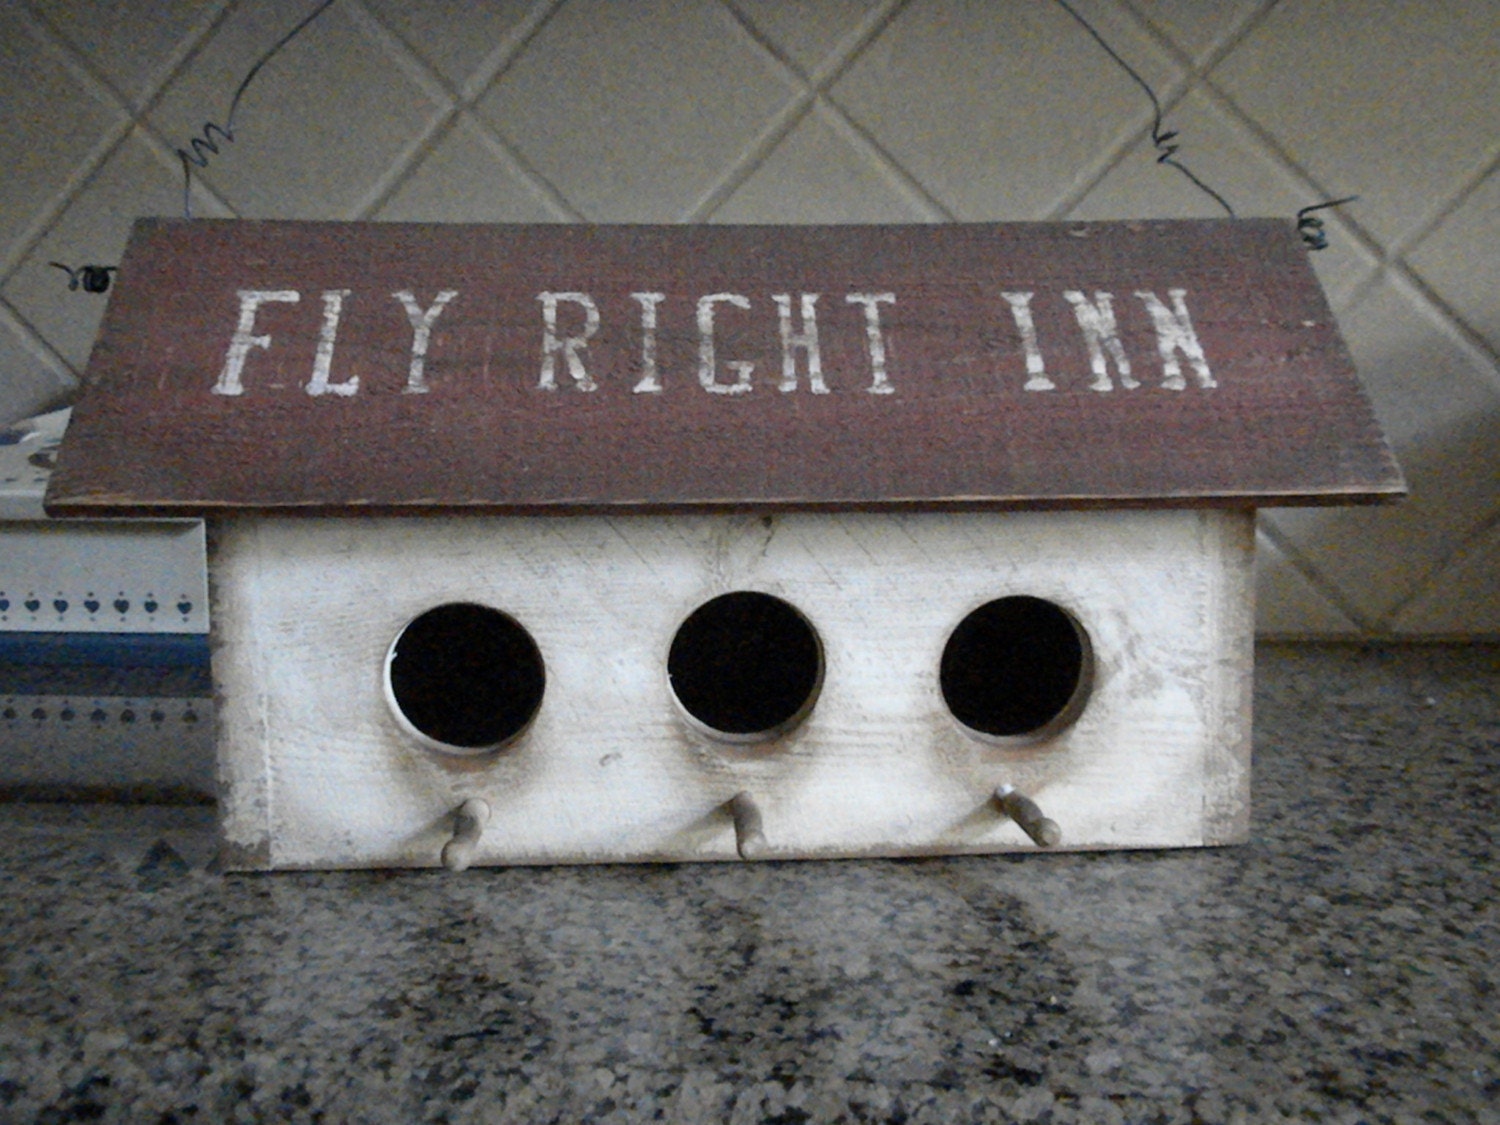 Fly Right Inn 3 Hole Birdhouse